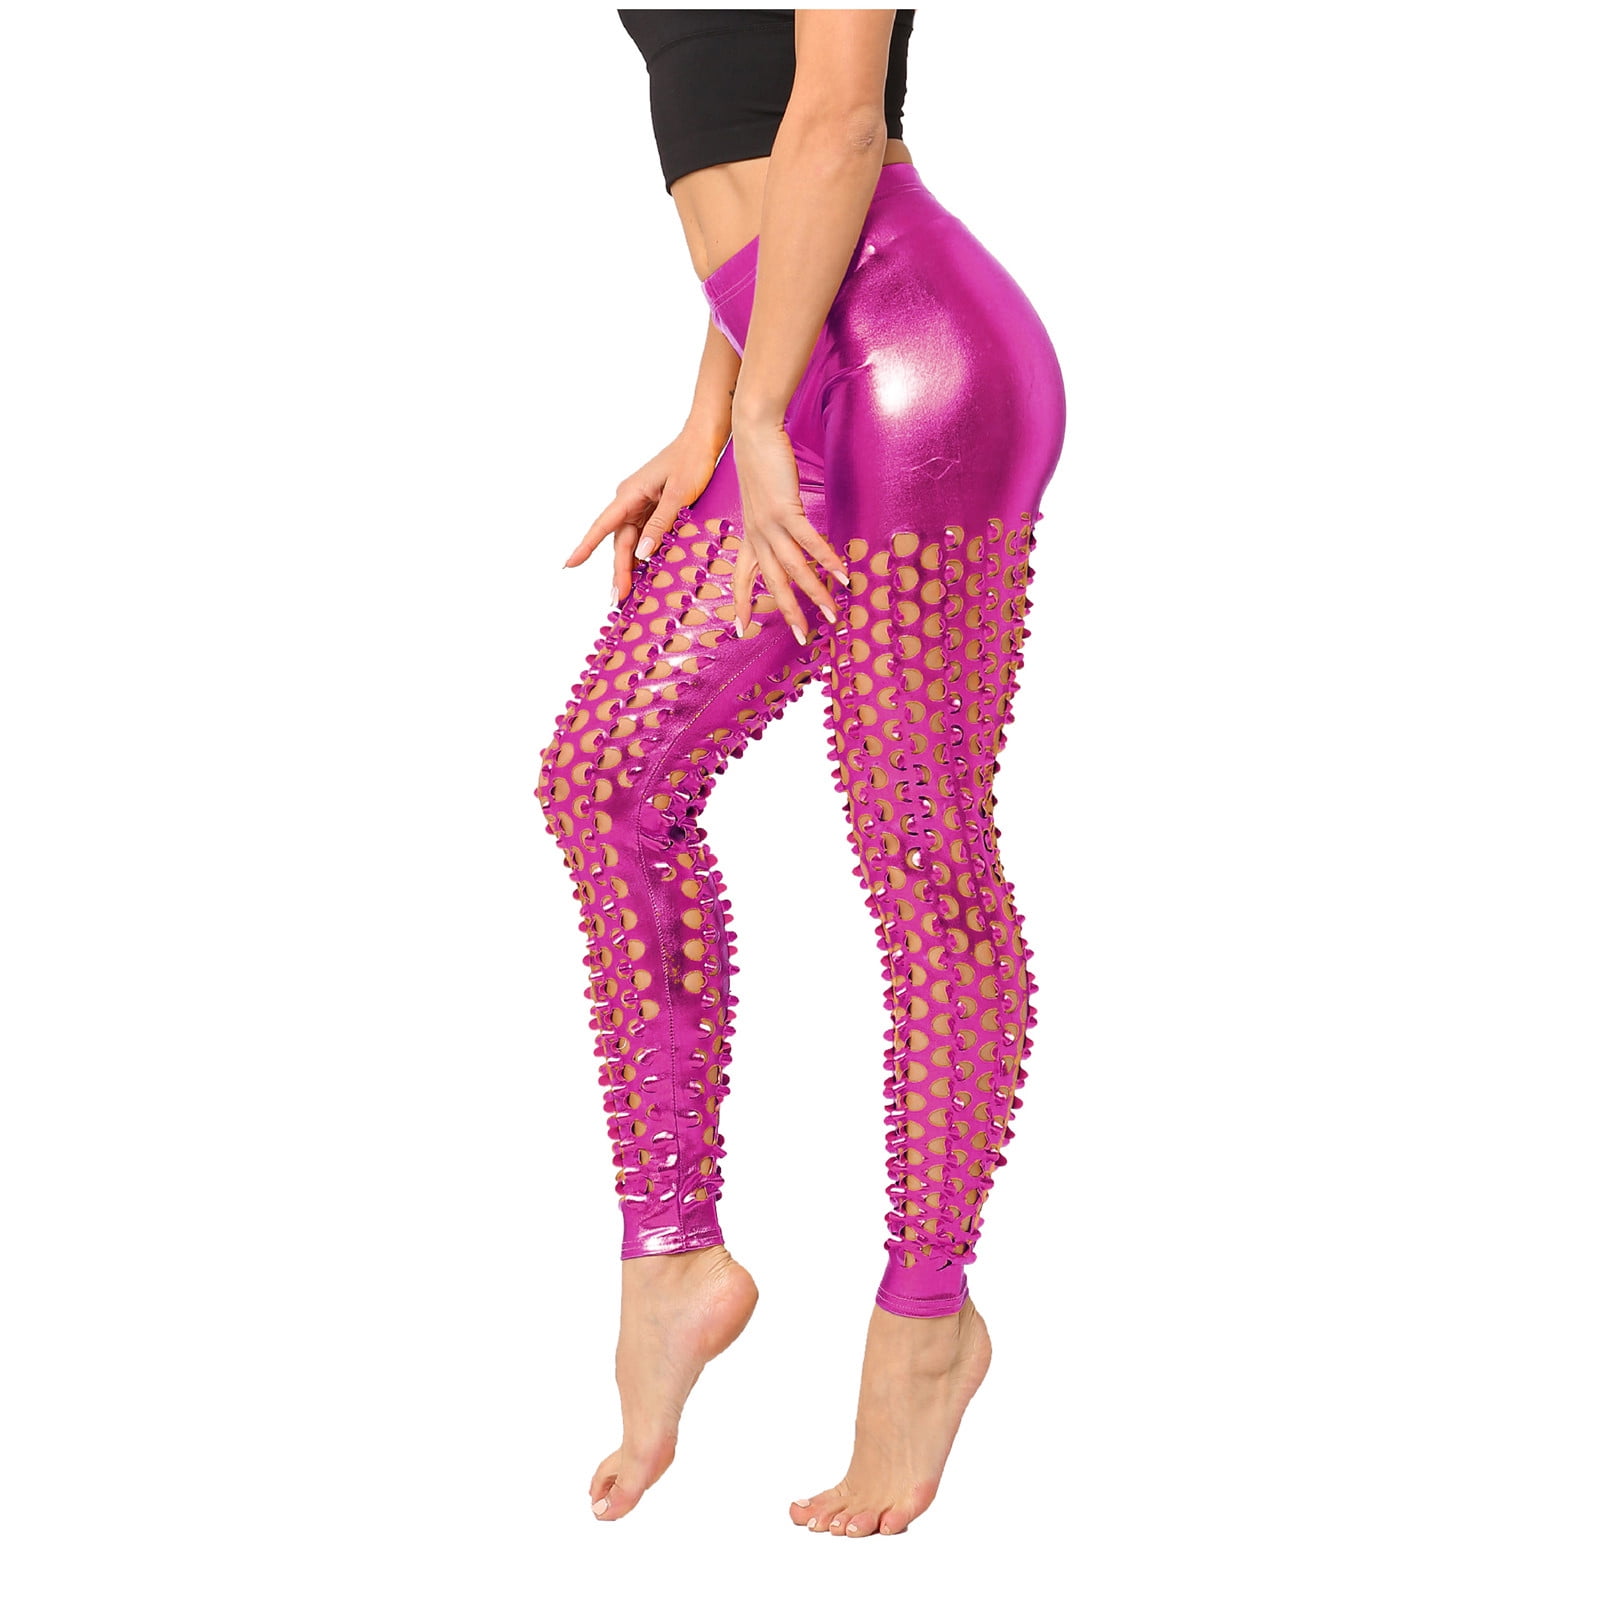 Buy online Pink Shimmer Leggings from Capris & Leggings for Women